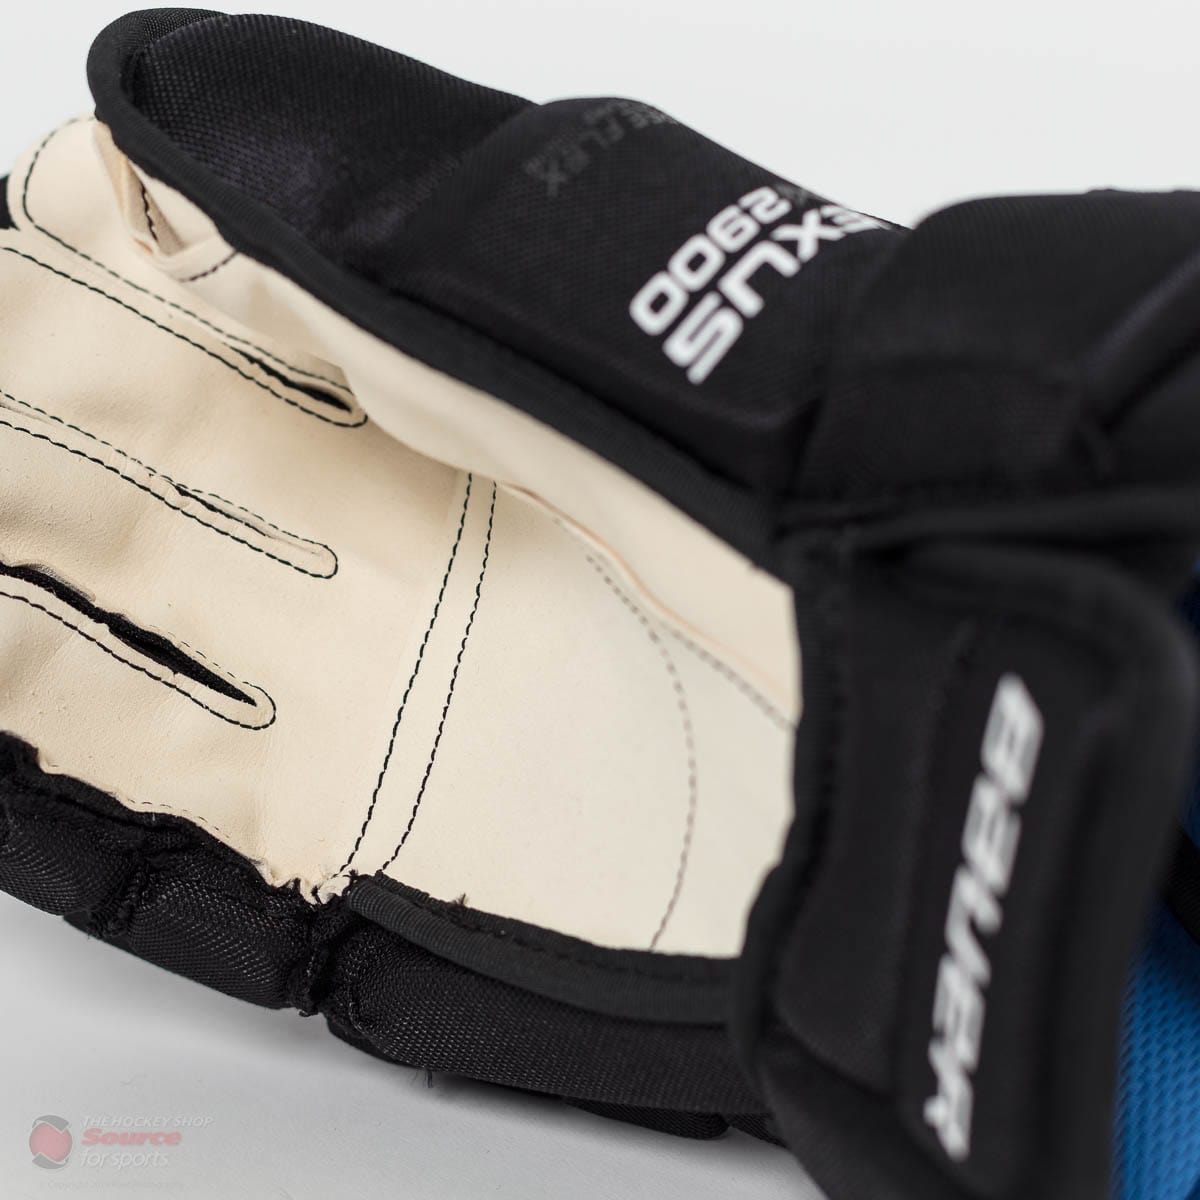 Bauer Nexus N2900 Senior Hockey Gloves